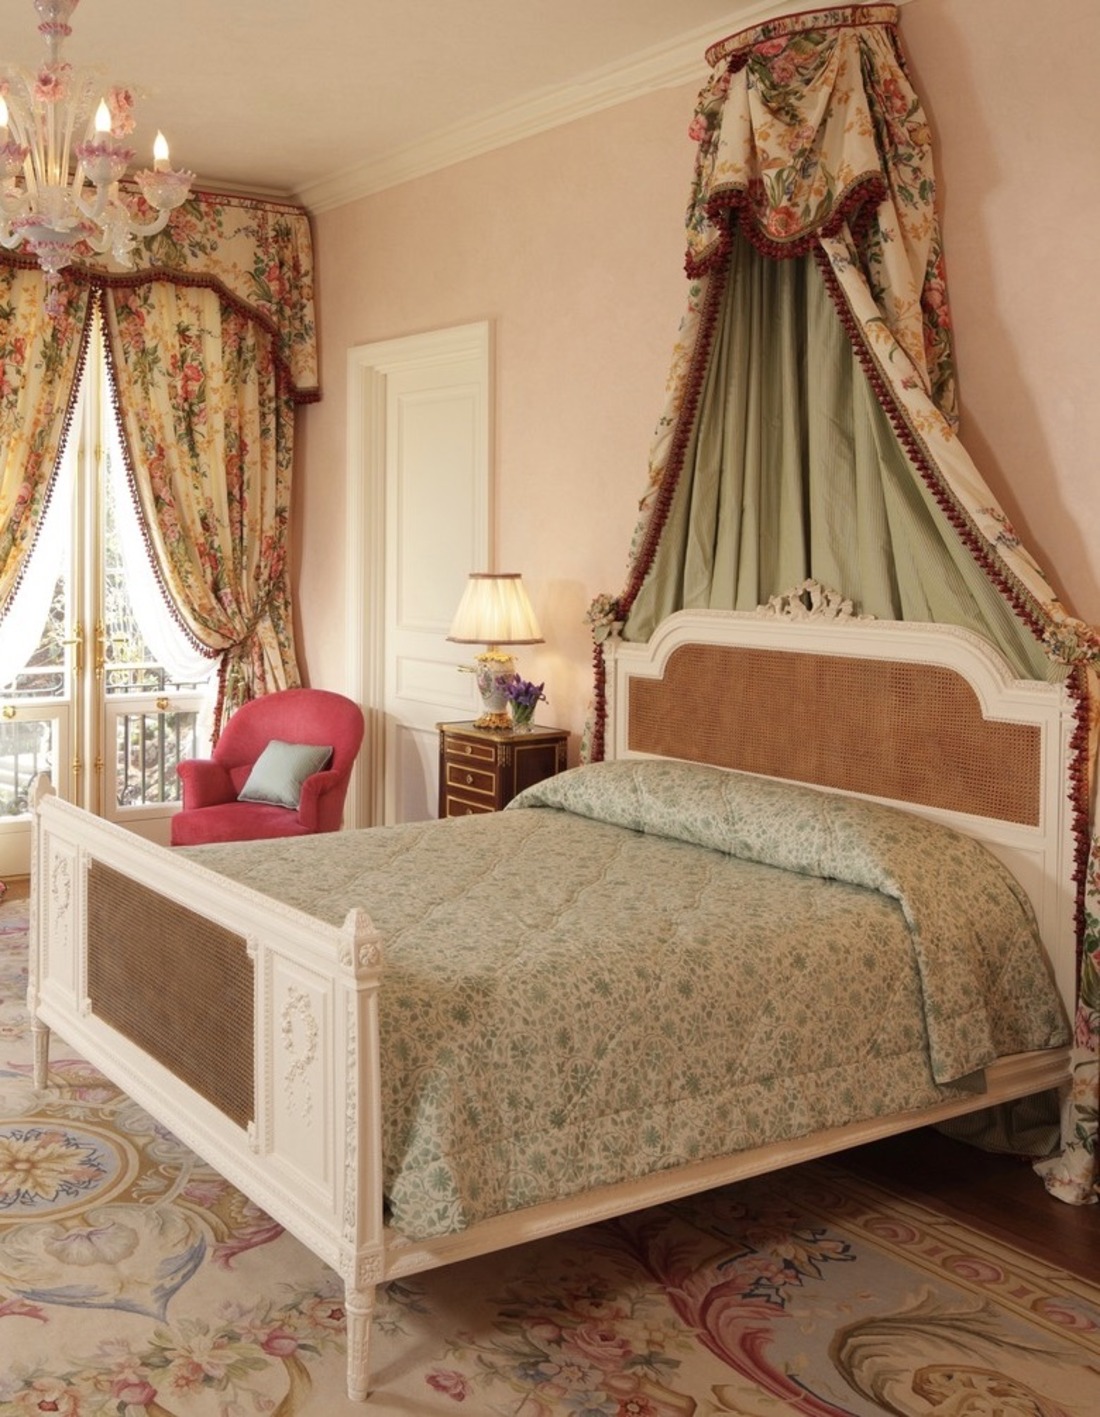 Pink Venetian plaster guest bedroom with Murano glass chandelier